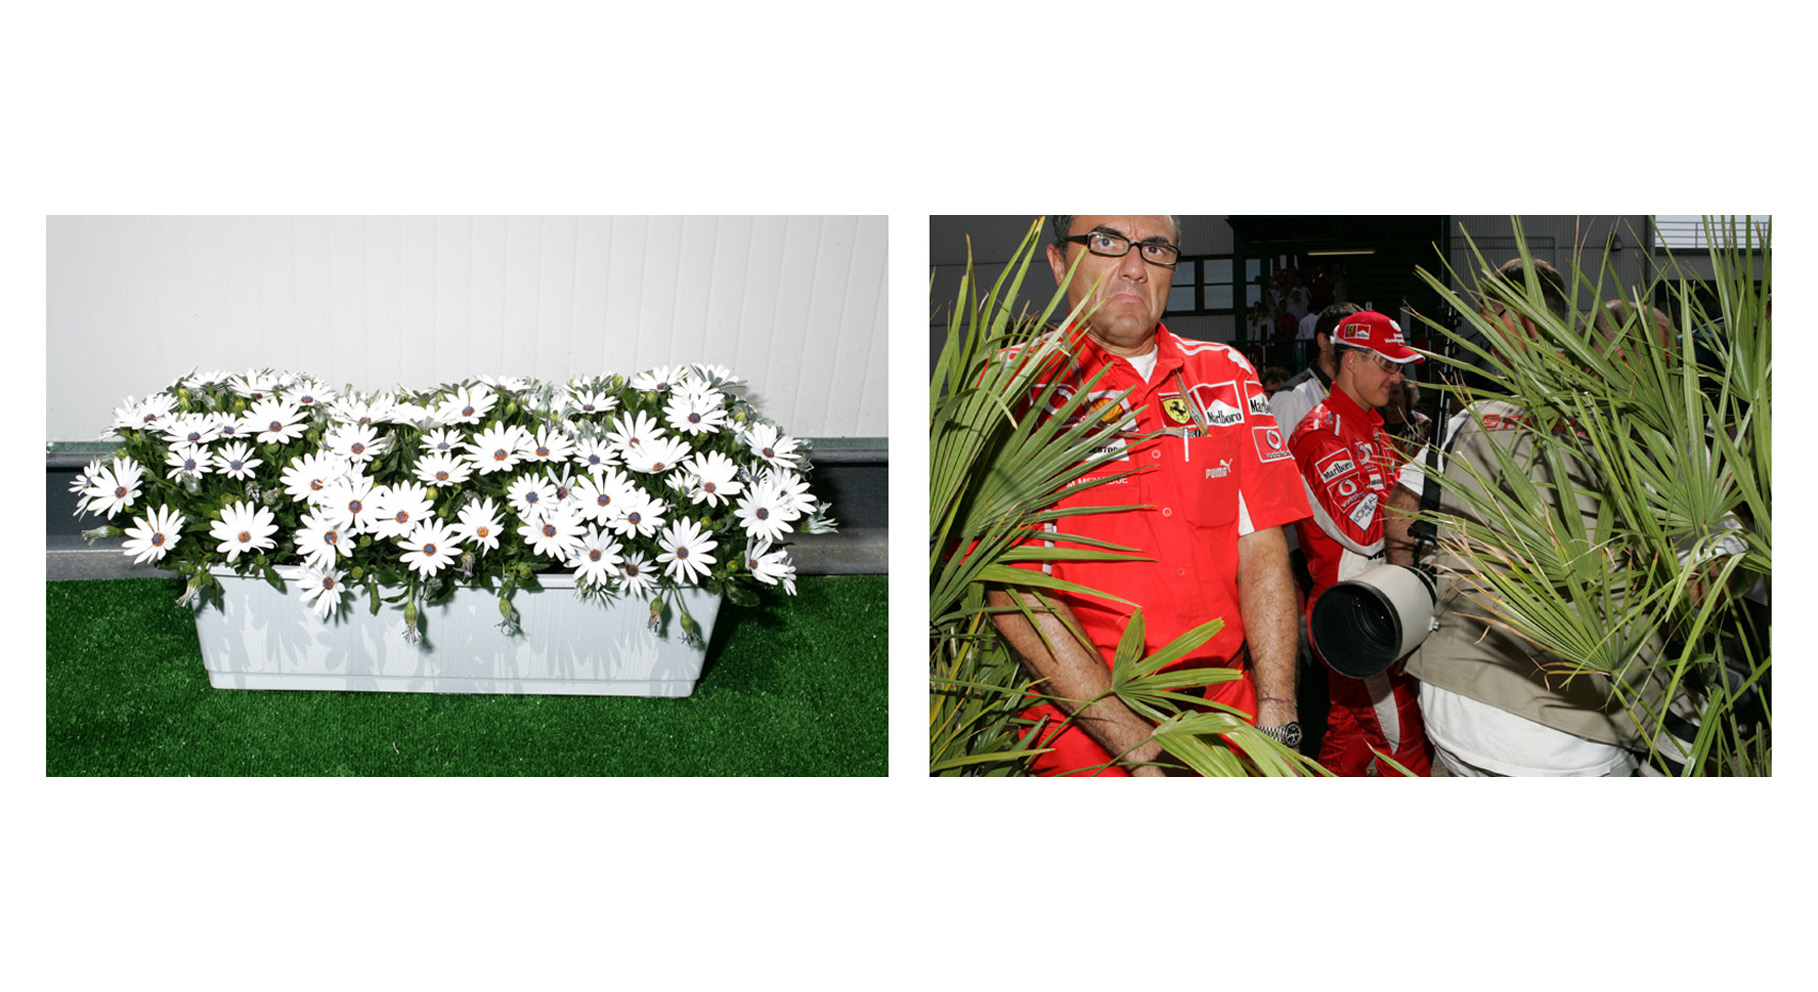 Flowers outside Bernies truck, Michael Schumacher walks through the paddock